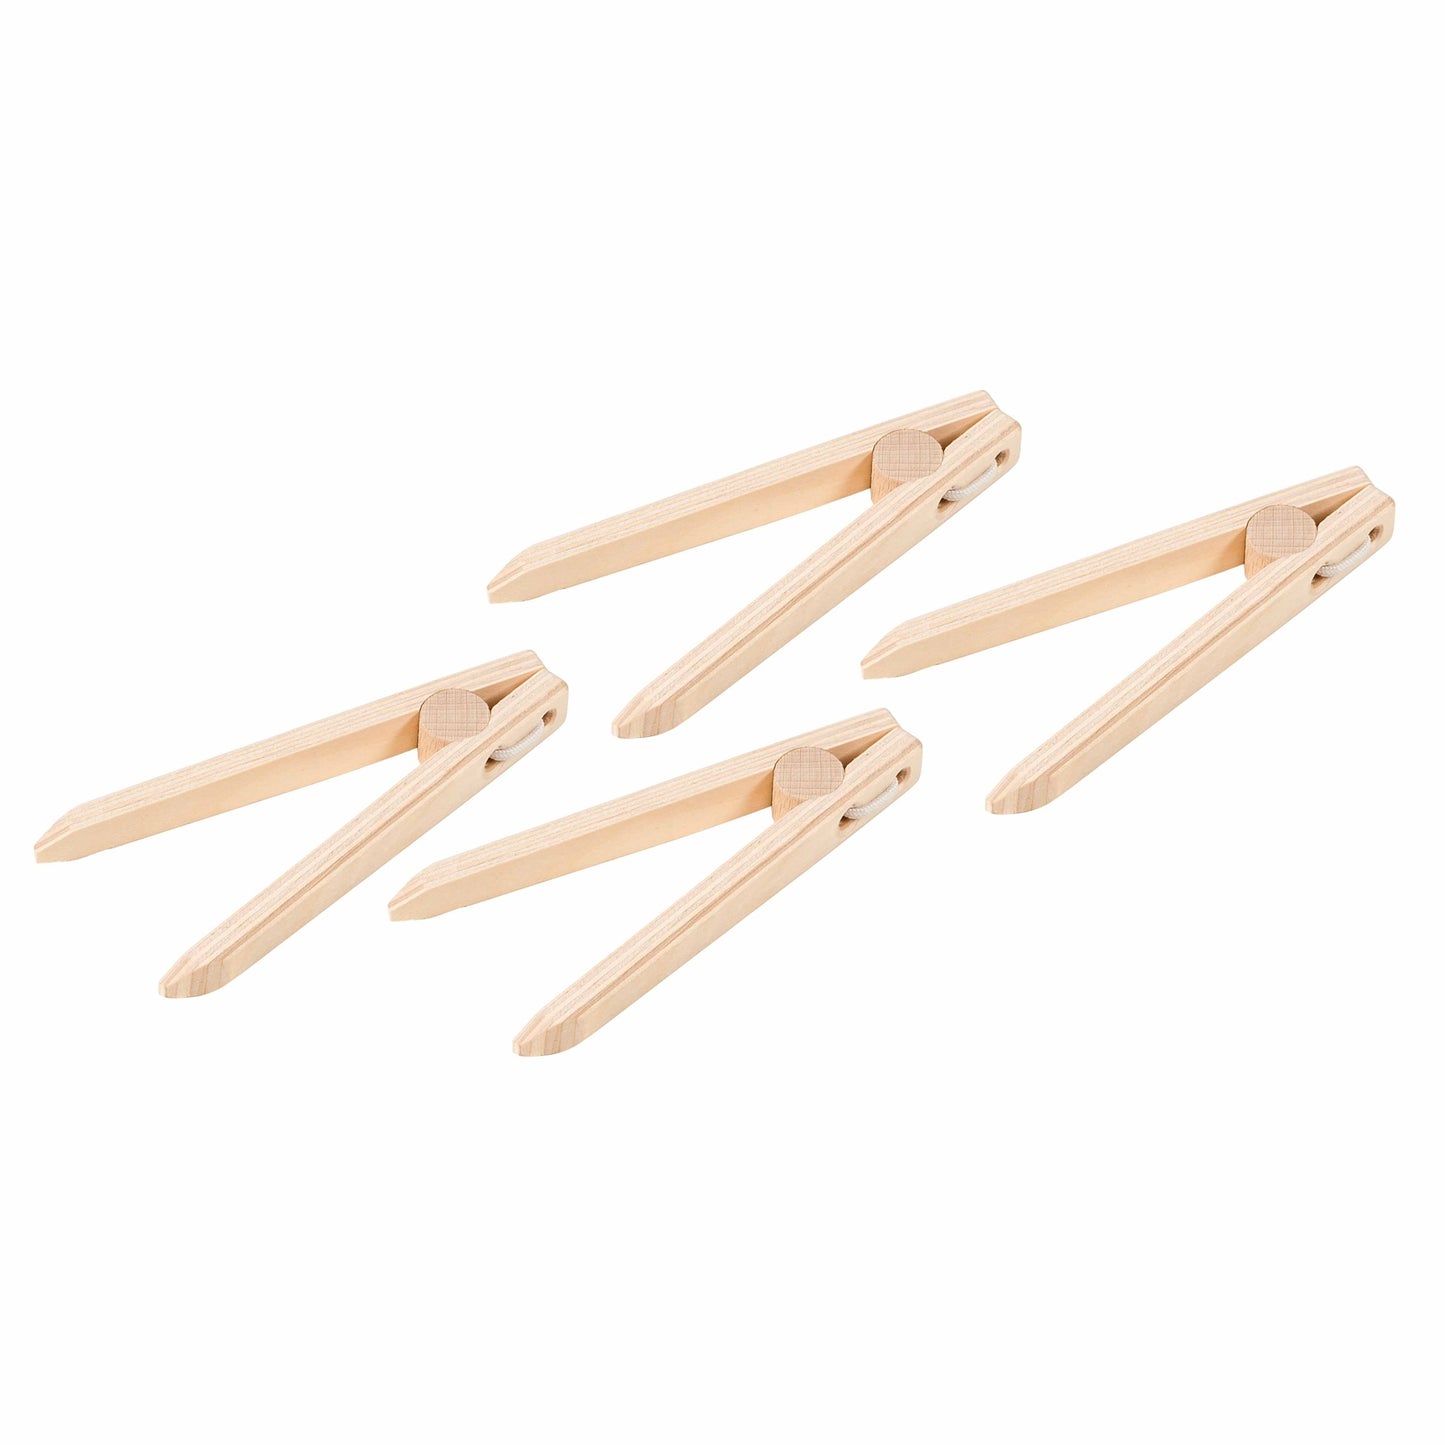 Montessori wooden tweezers